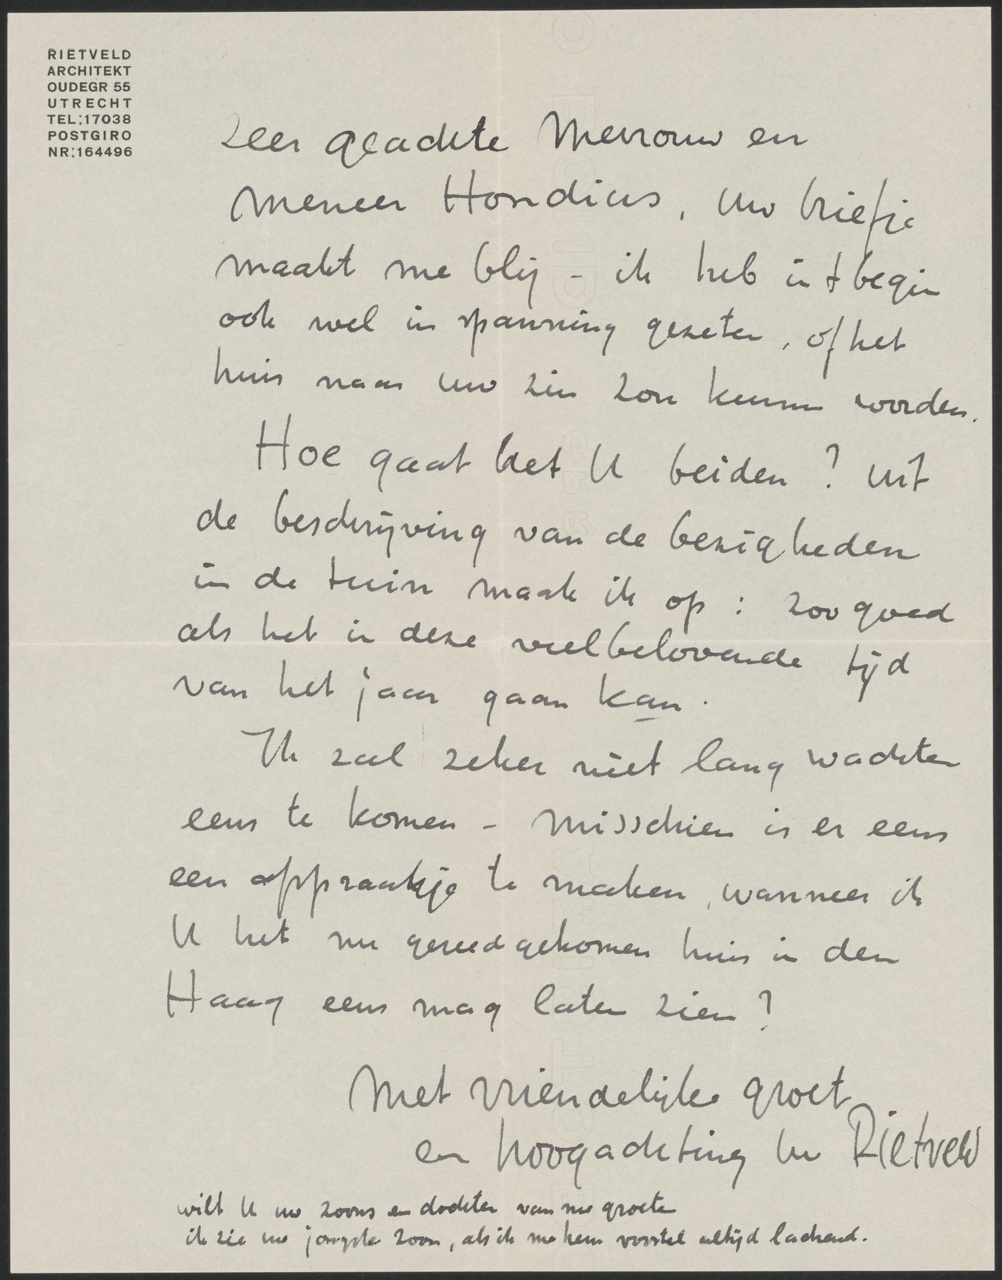 Brief van Gerrit Thomas Rietveld aan mevrouw en meneer Hondius